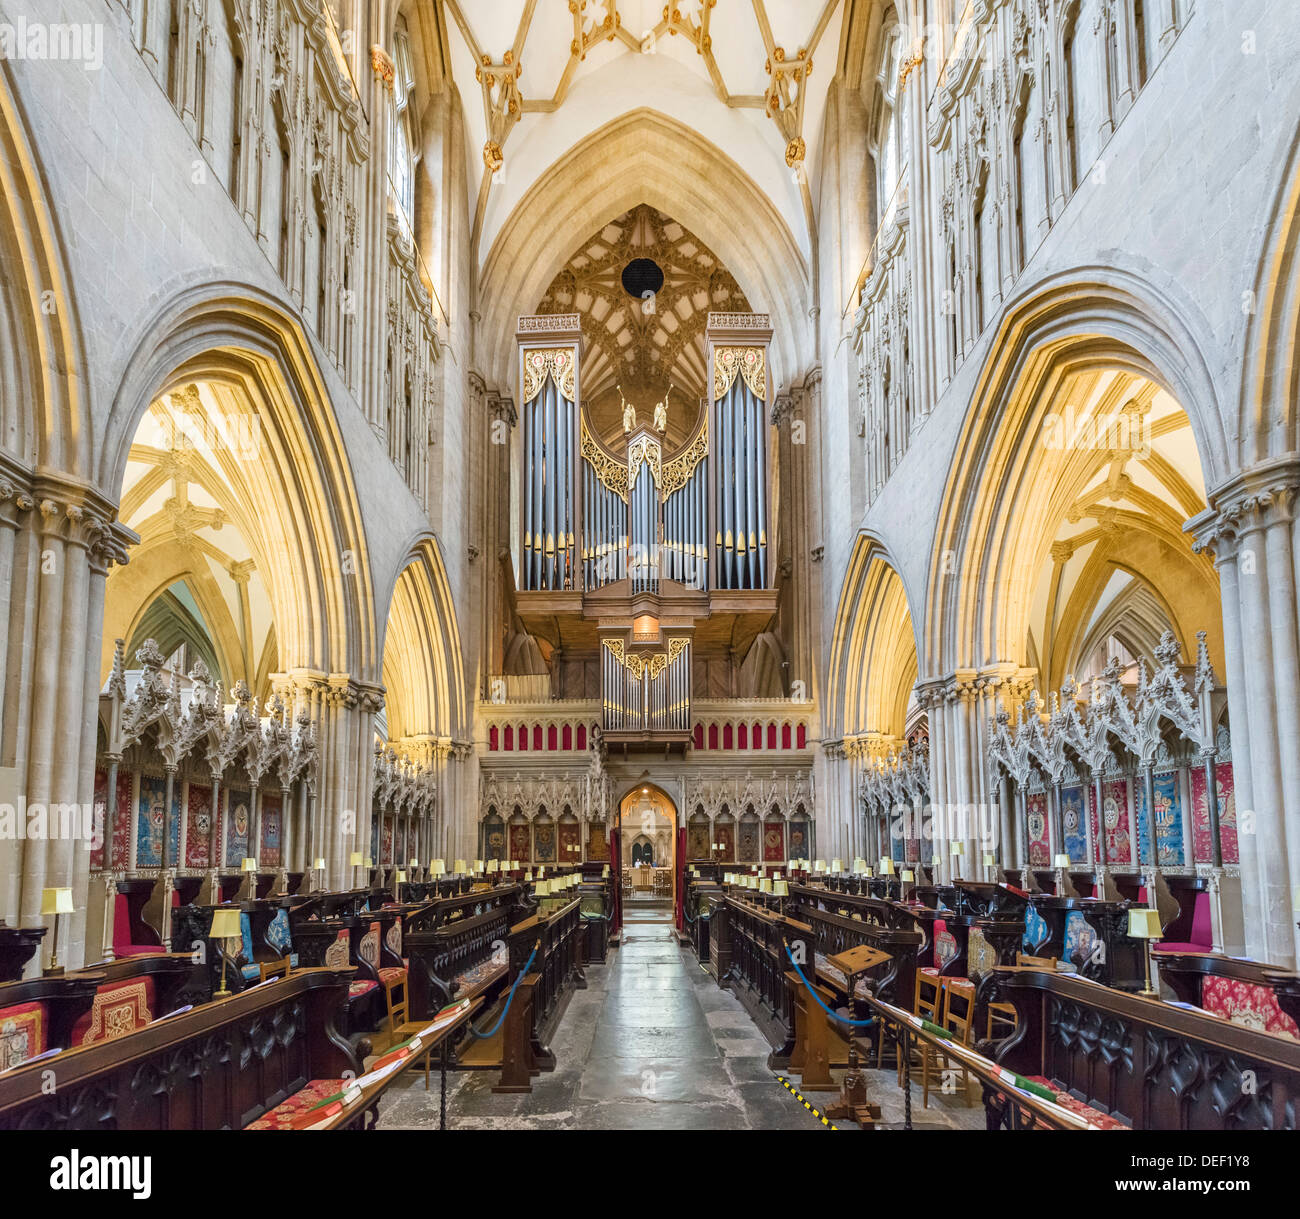 Intérieur de la cathédrale de Wells, Wells, Somerset, England, UK Banque D'Images